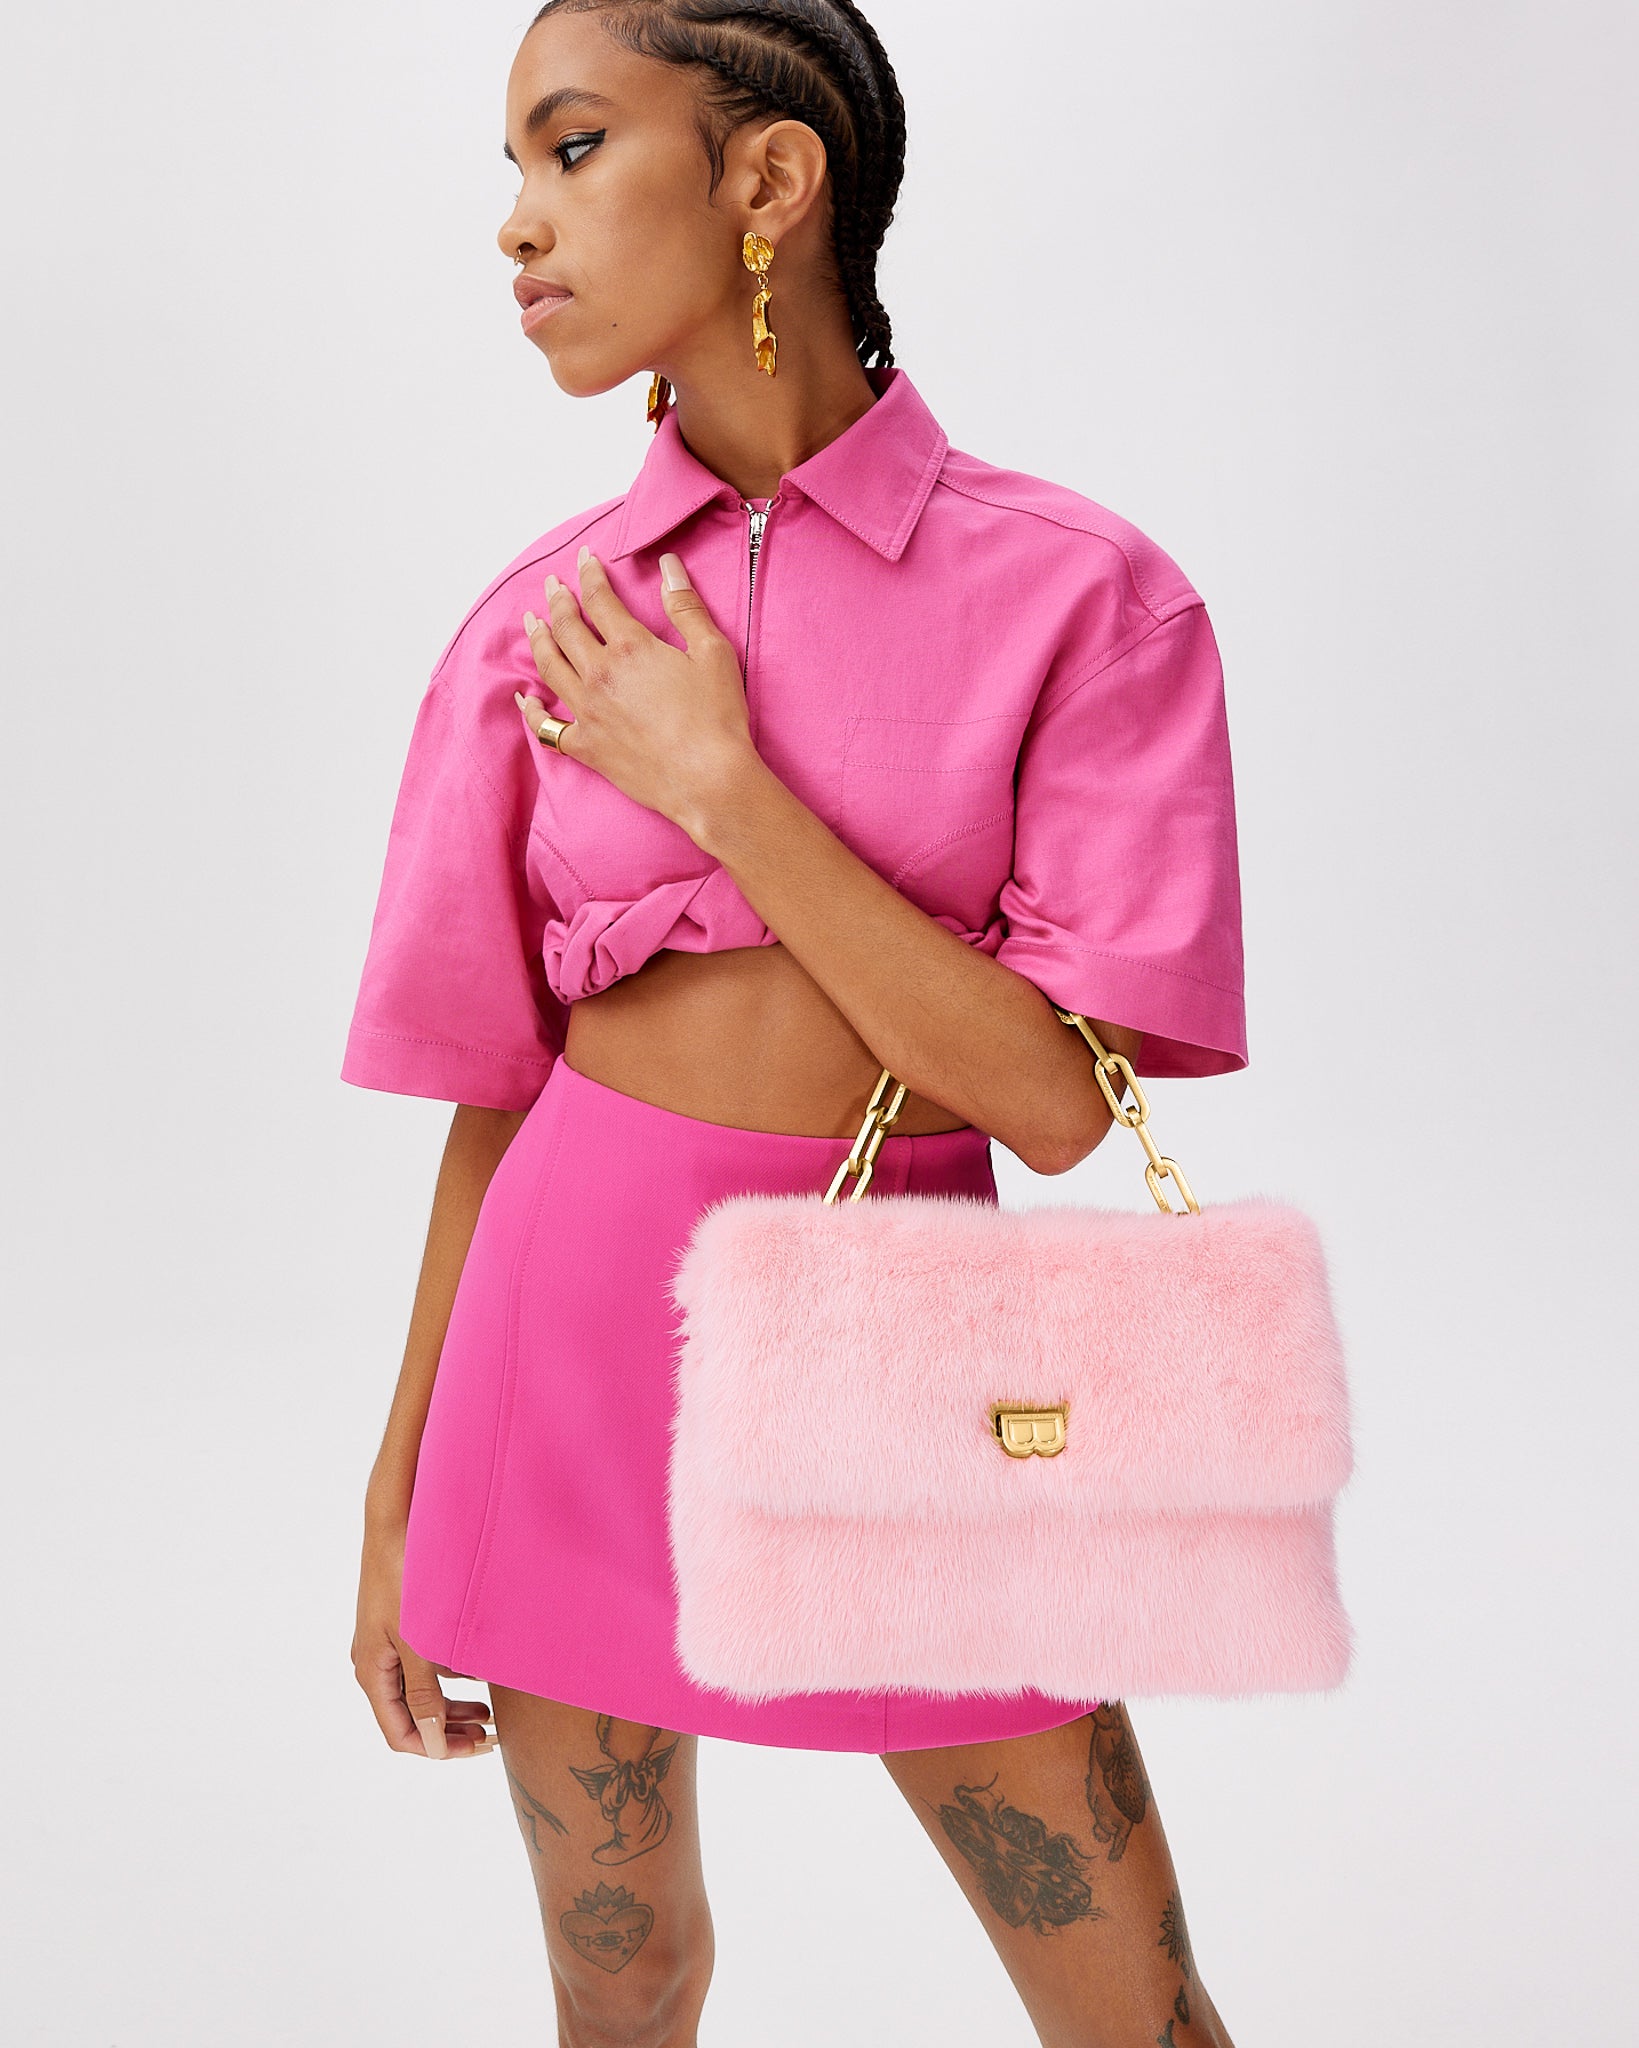 Brandon Blackwood New York - Lisa Shoulder Bag - Pink Mink w/ Brass Hardware